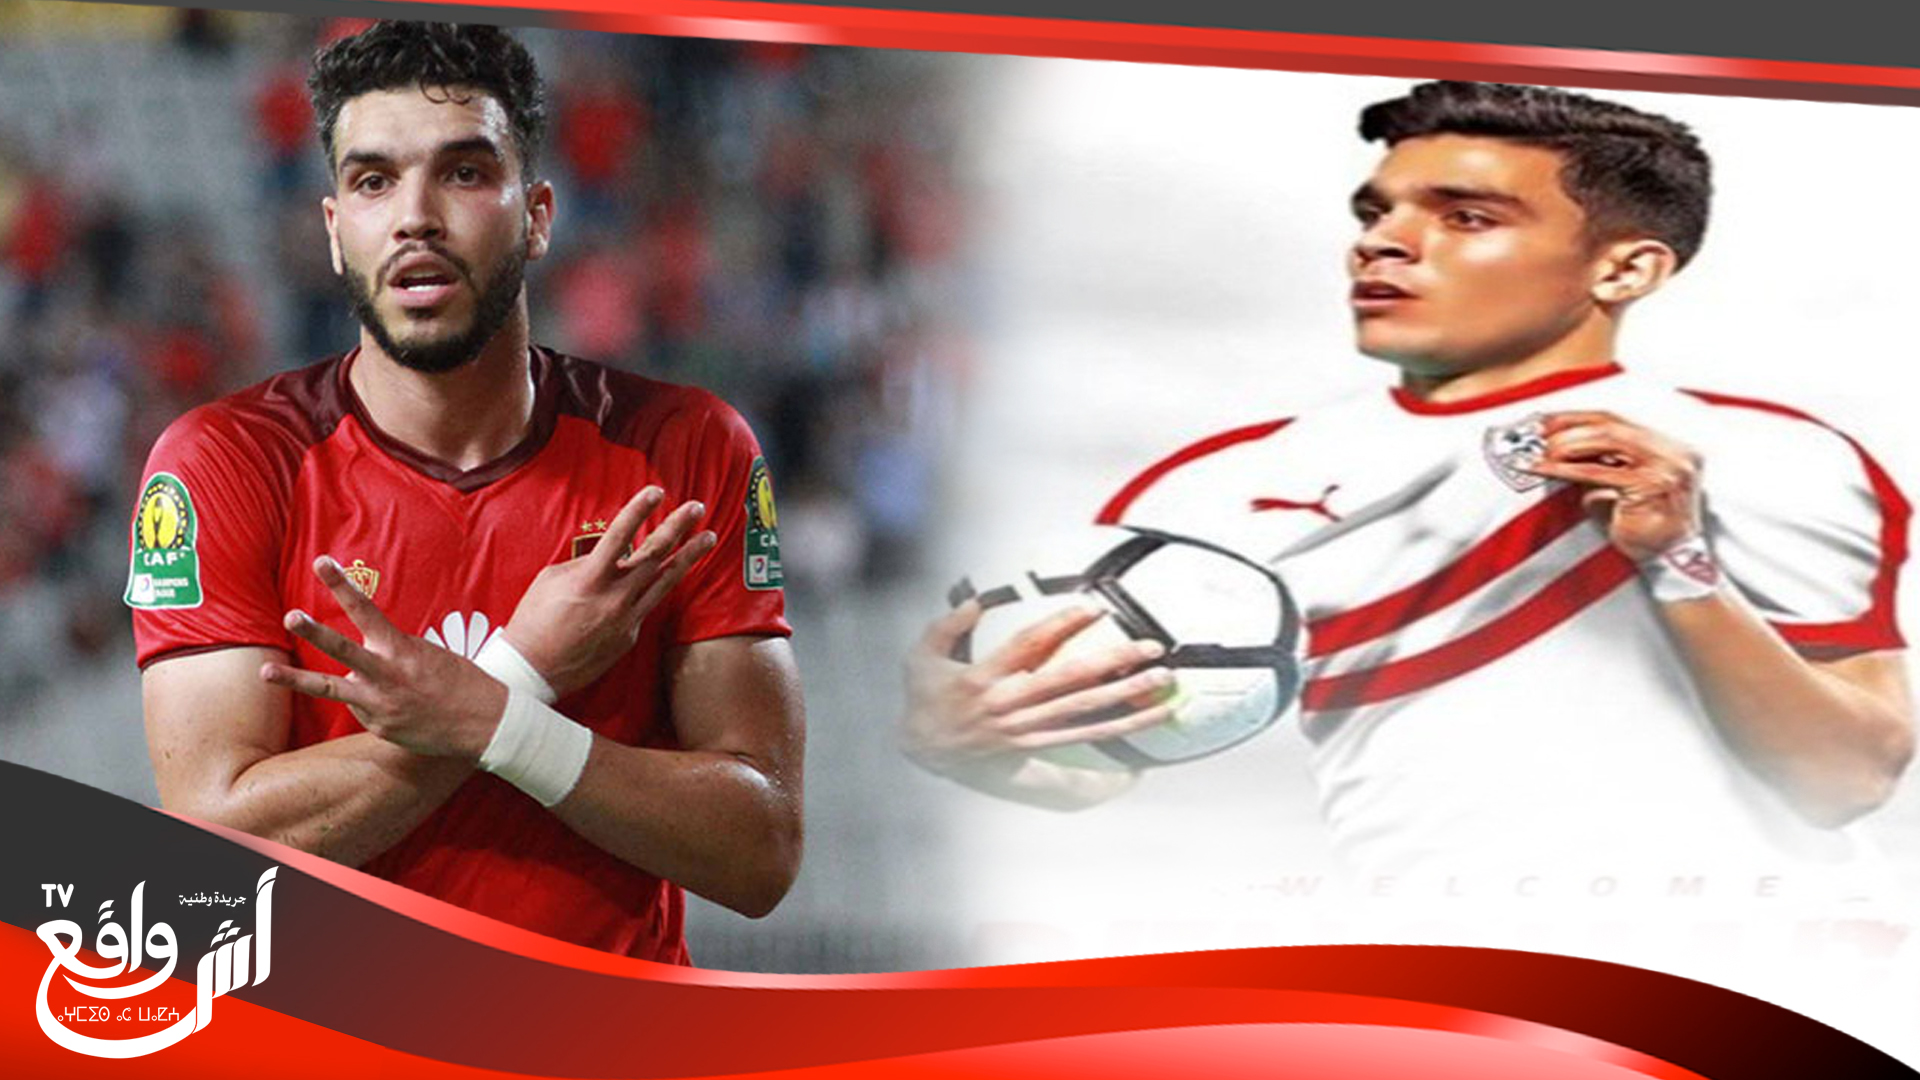 لاعبون مغاربة سطع نجمهم وتألقوا بشكل لافت في الدوري المصري الممتاز لكرة القدم